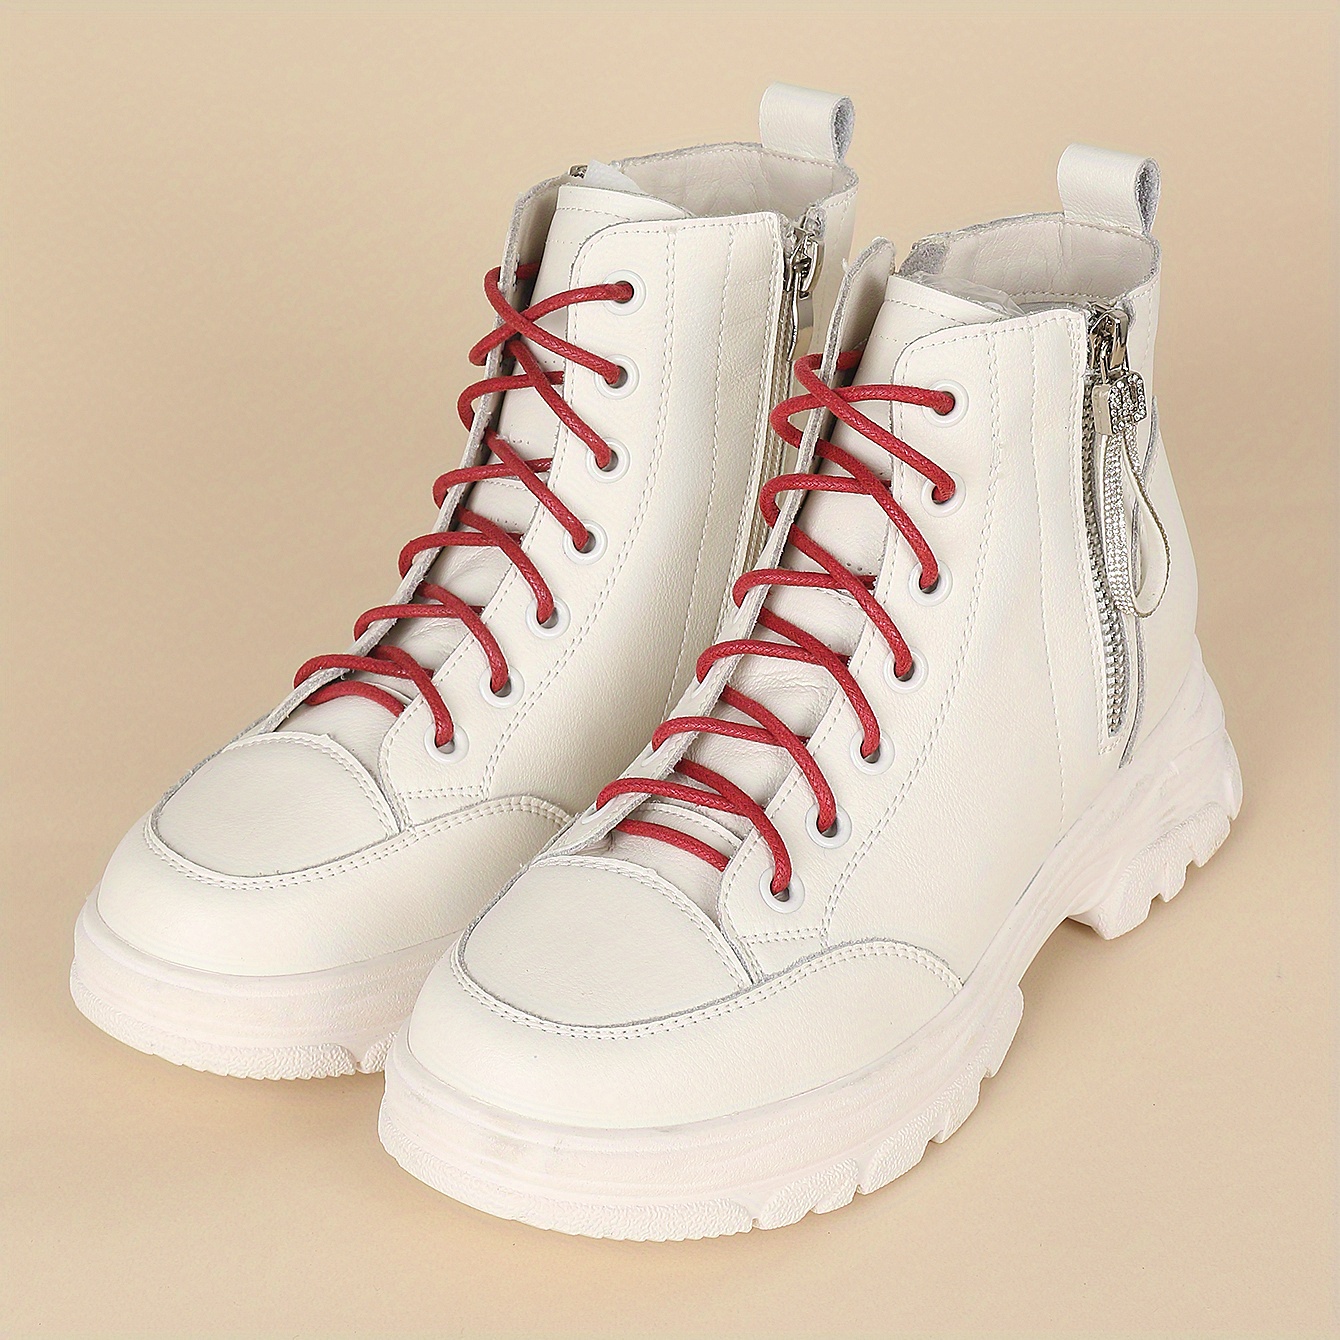 70/90/120/150/160CM Waxed Cotton Round Shoe laces Leather Shoes lace  Waterproof ShoeLaces Men Boots Shoelace Shoestring - AliExpress